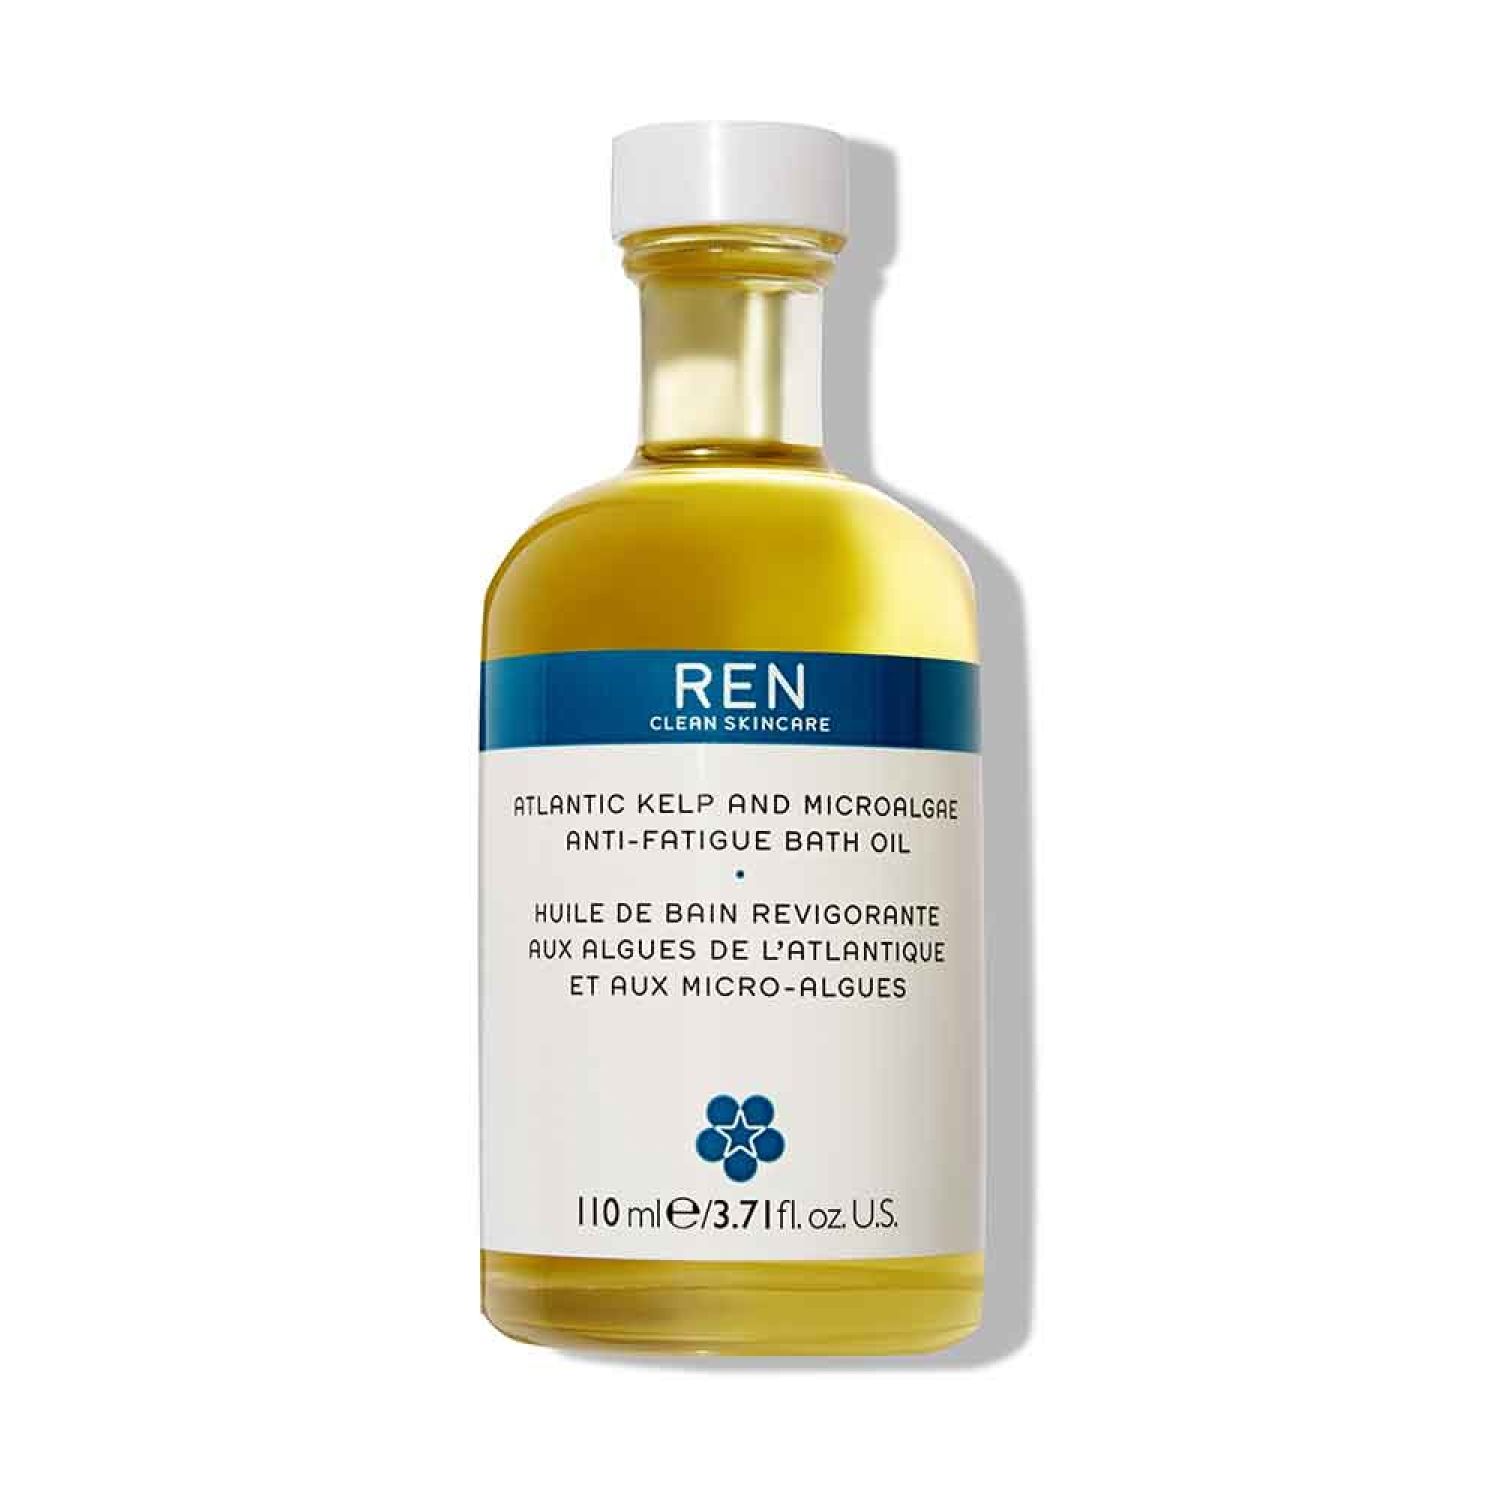 REN CLEAN SKINCARE BODY ATLANTIC KELP & MICROALGAE Anti-Fatigue Bath Oil